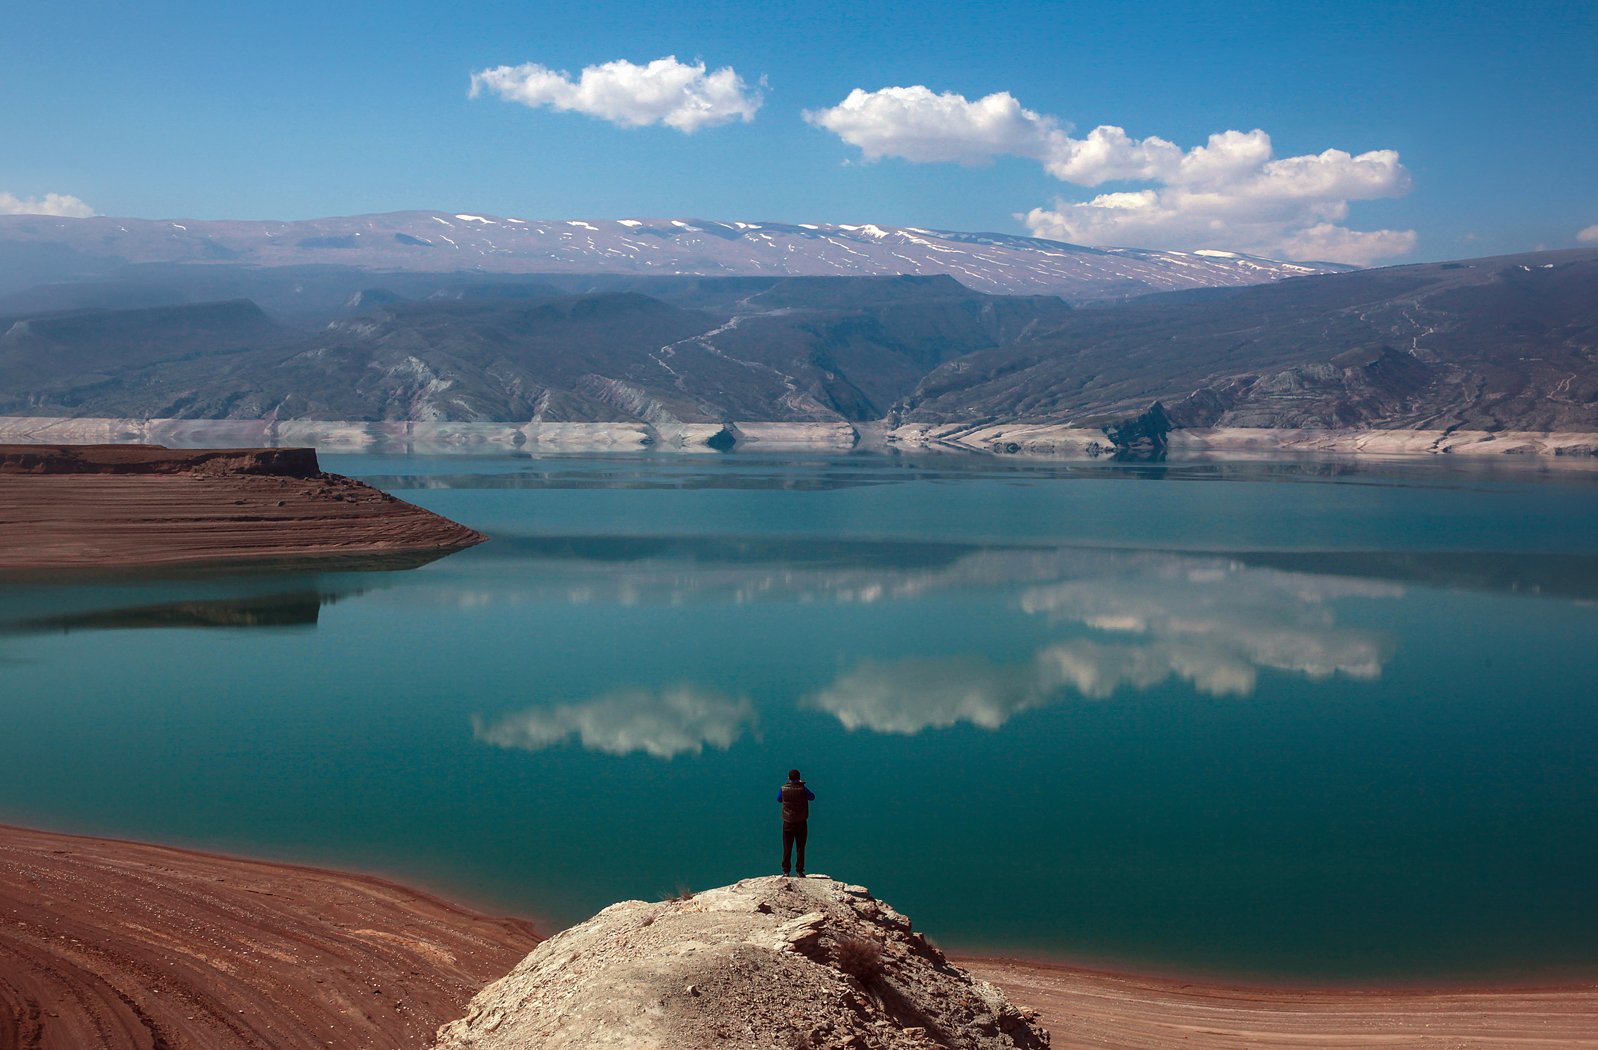 ирганайское водохранилище,горы,дагестан,,пейзаж, Marat Magov